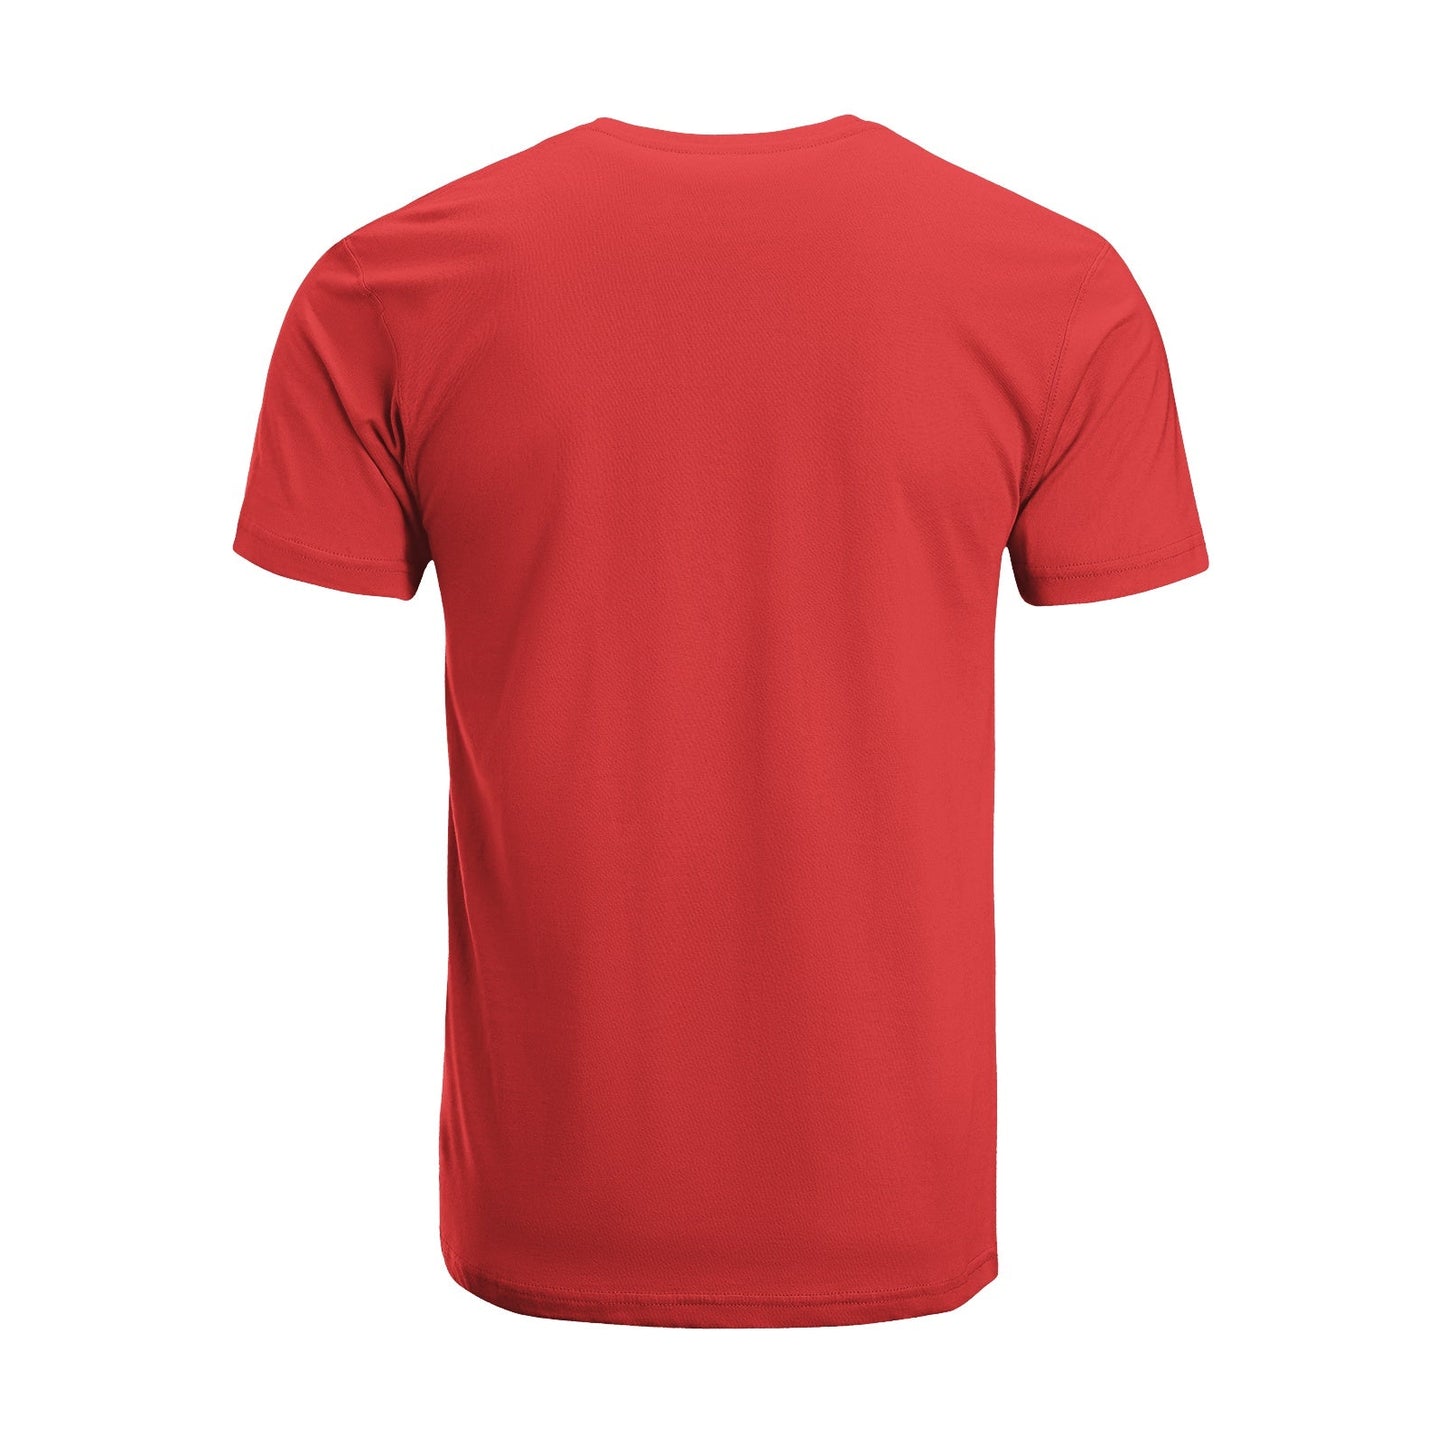 Unisex Short Sleeve Crew Neck Cotton Jersey T-Shirt TRUCK 42